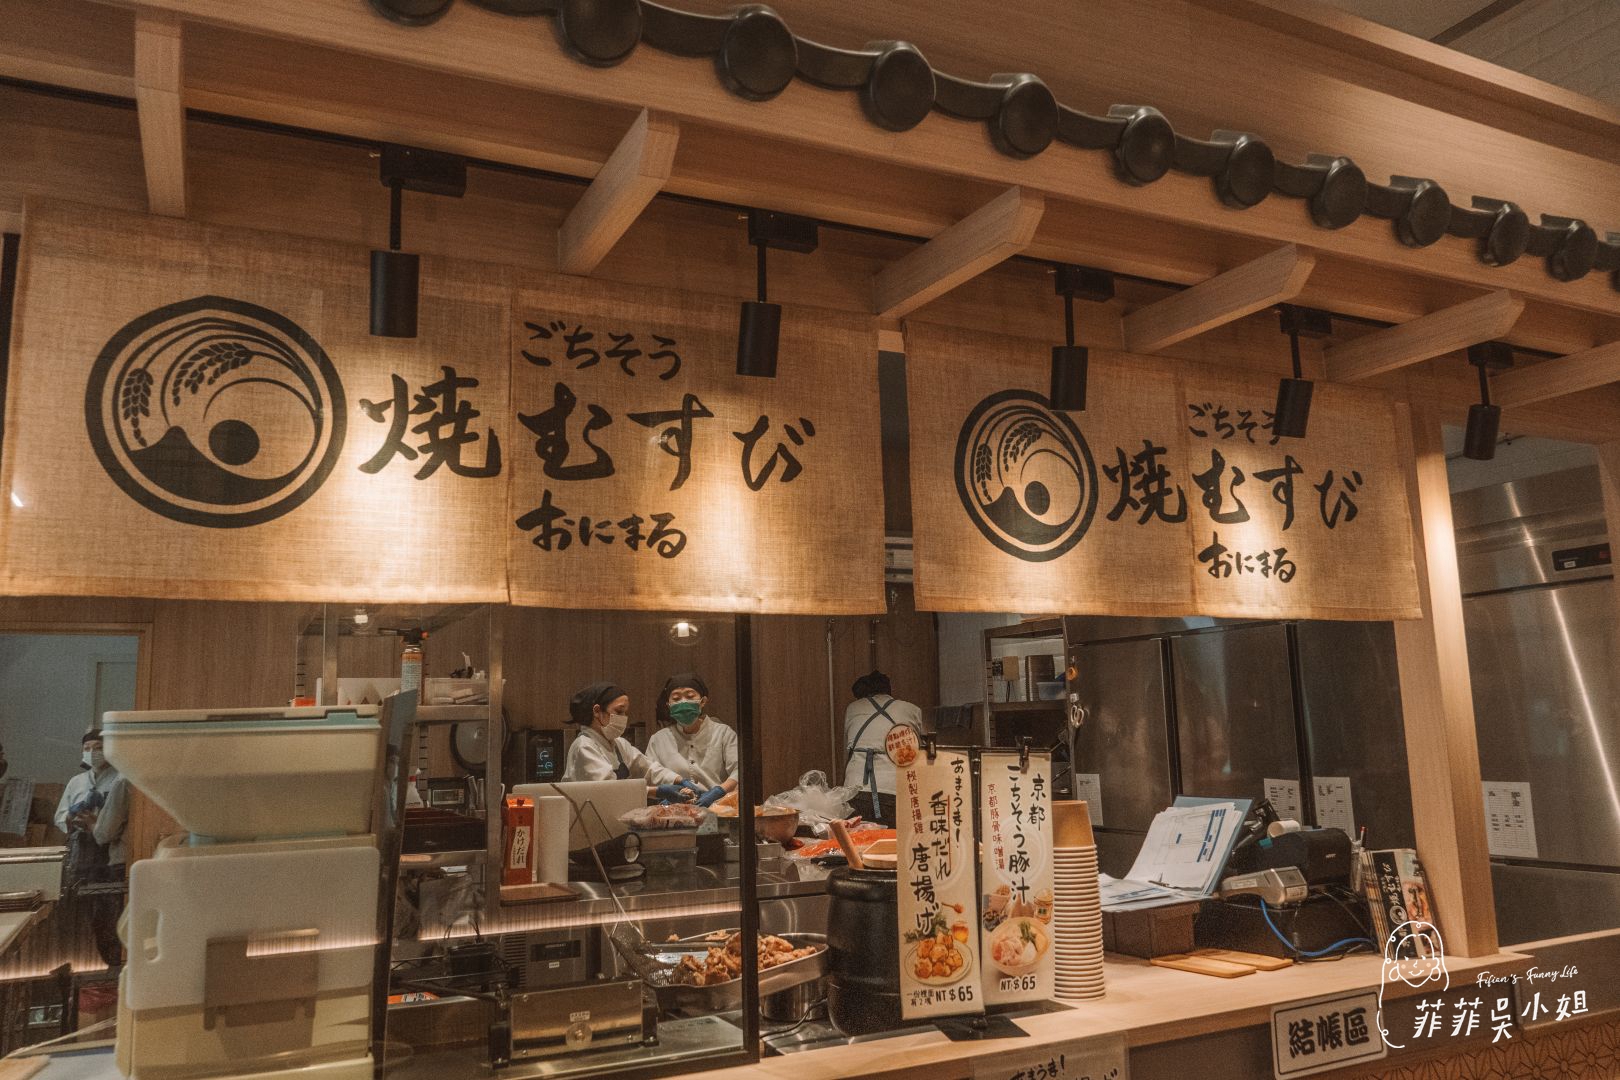 京都御握丸 ONIMARU 還原度100%日本風味，京都人氣排隊名店，多達20種口味日式飯糰，台灣也吃得到 @菲菲吳小姐